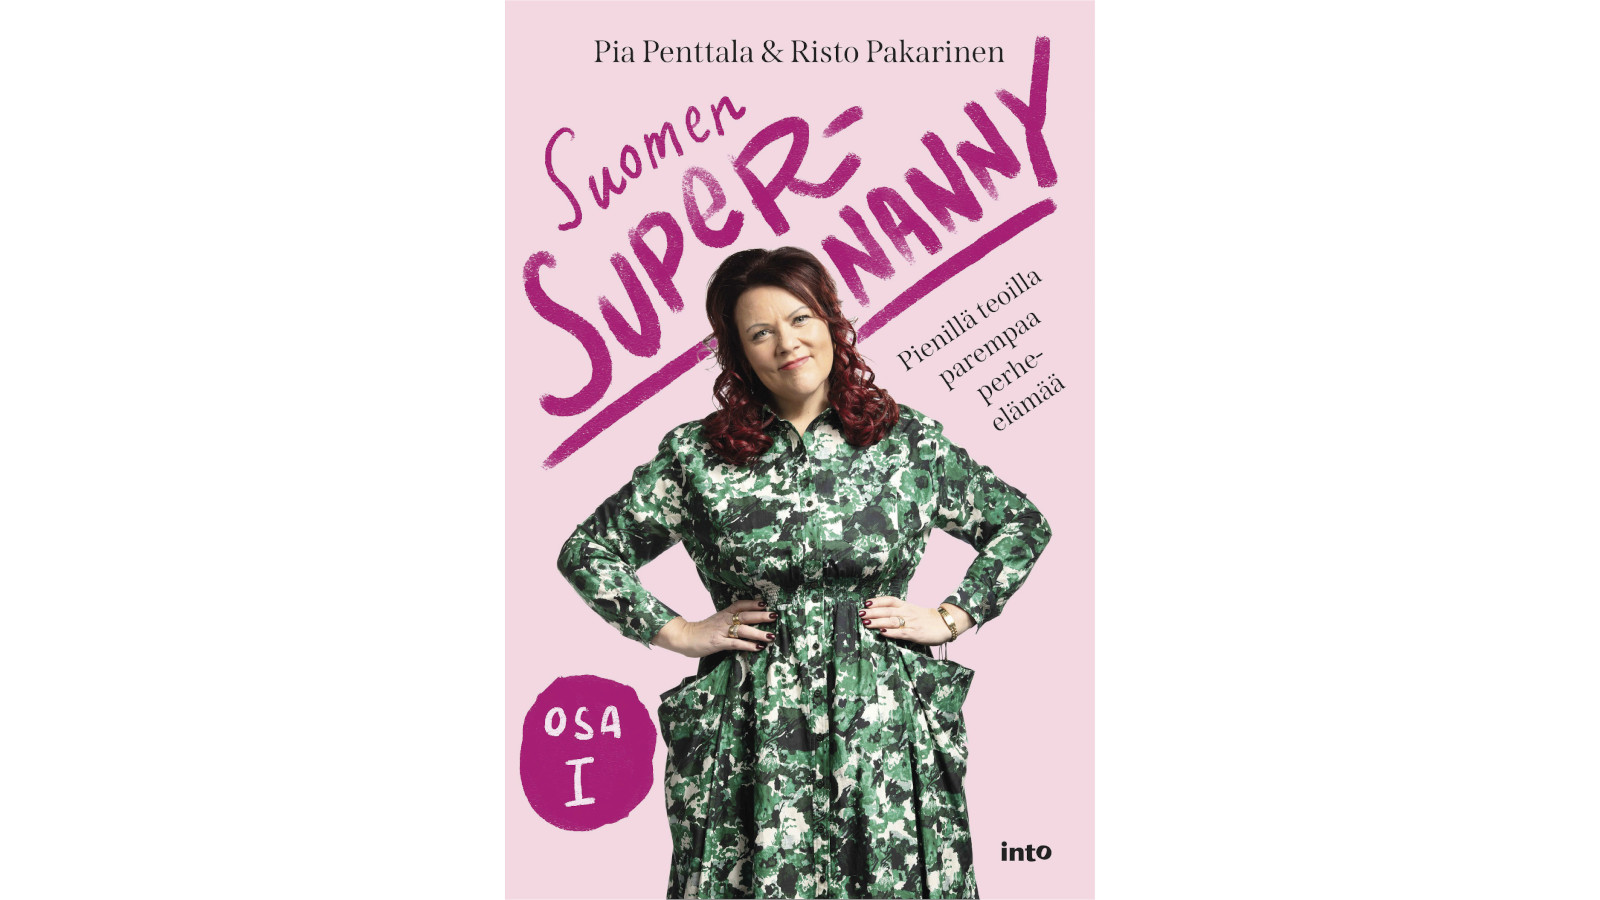 Suomen Supernanny – Pienillä teoilla parempaa perhe-elämää on 2021 ilmestynyt supernannyna tunnetun Pia Penttalan ja toimittaja, kirjailija Risto Pakarisen uutuuskirja. 